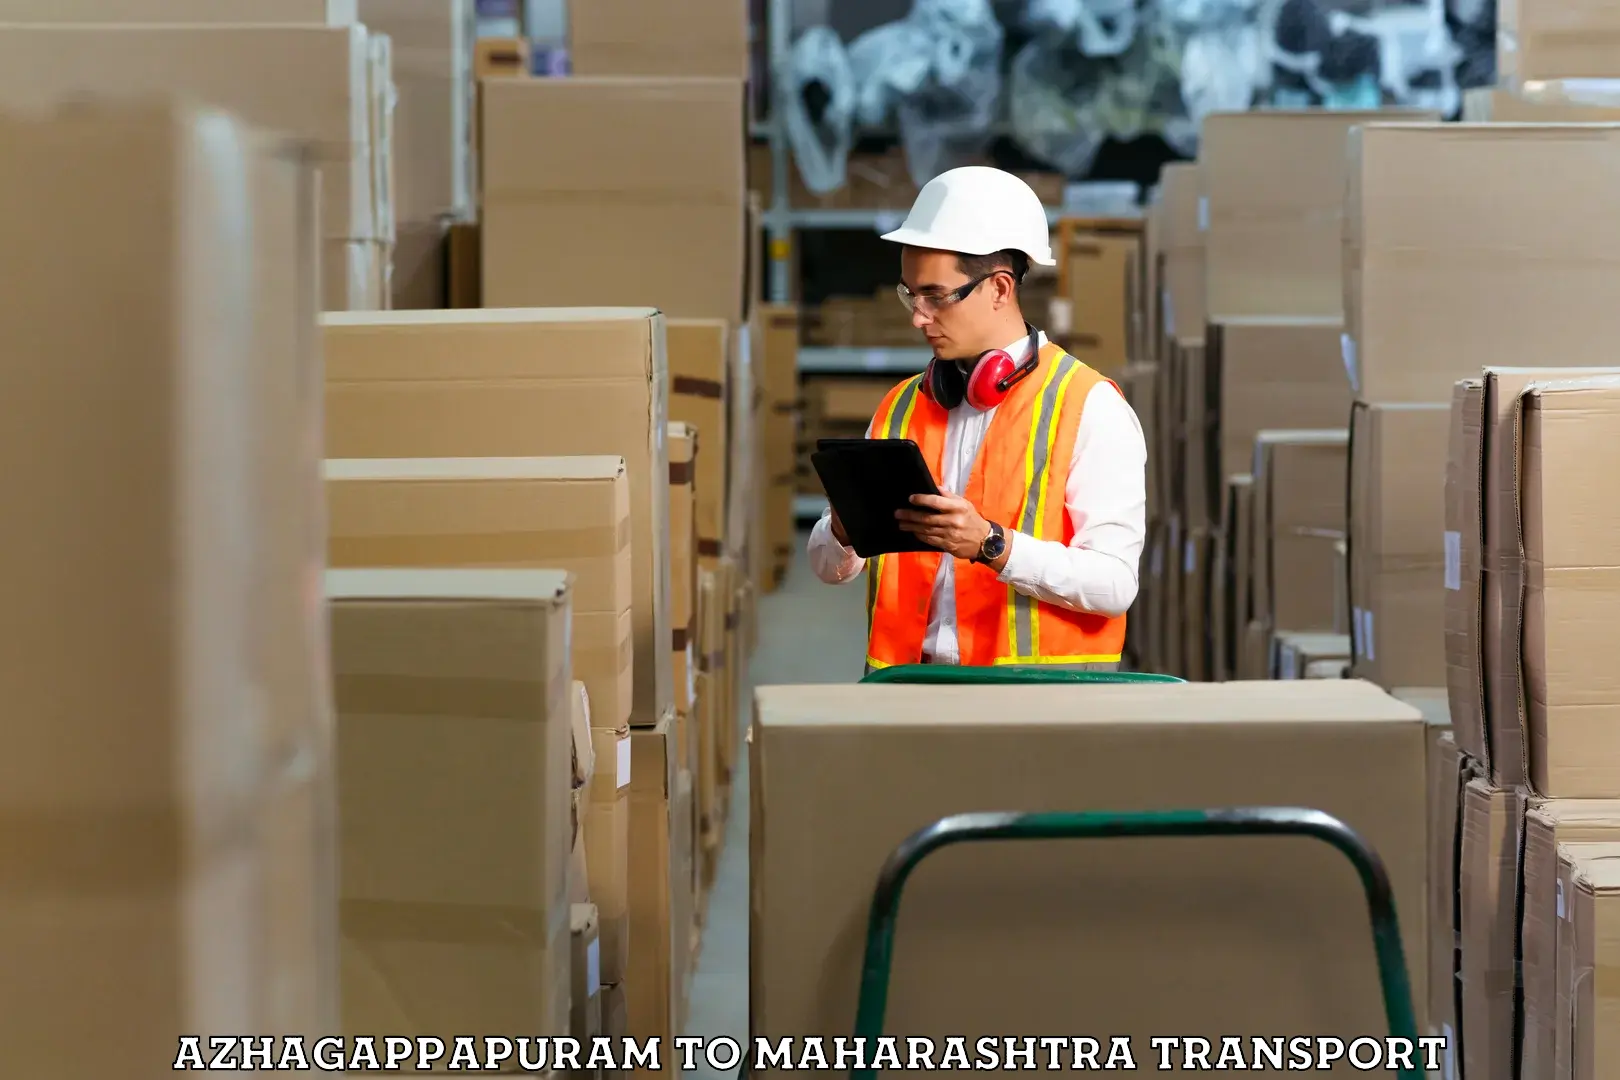 Vehicle parcel service Azhagappapuram to Homi Bhabha National Institute Mumbai